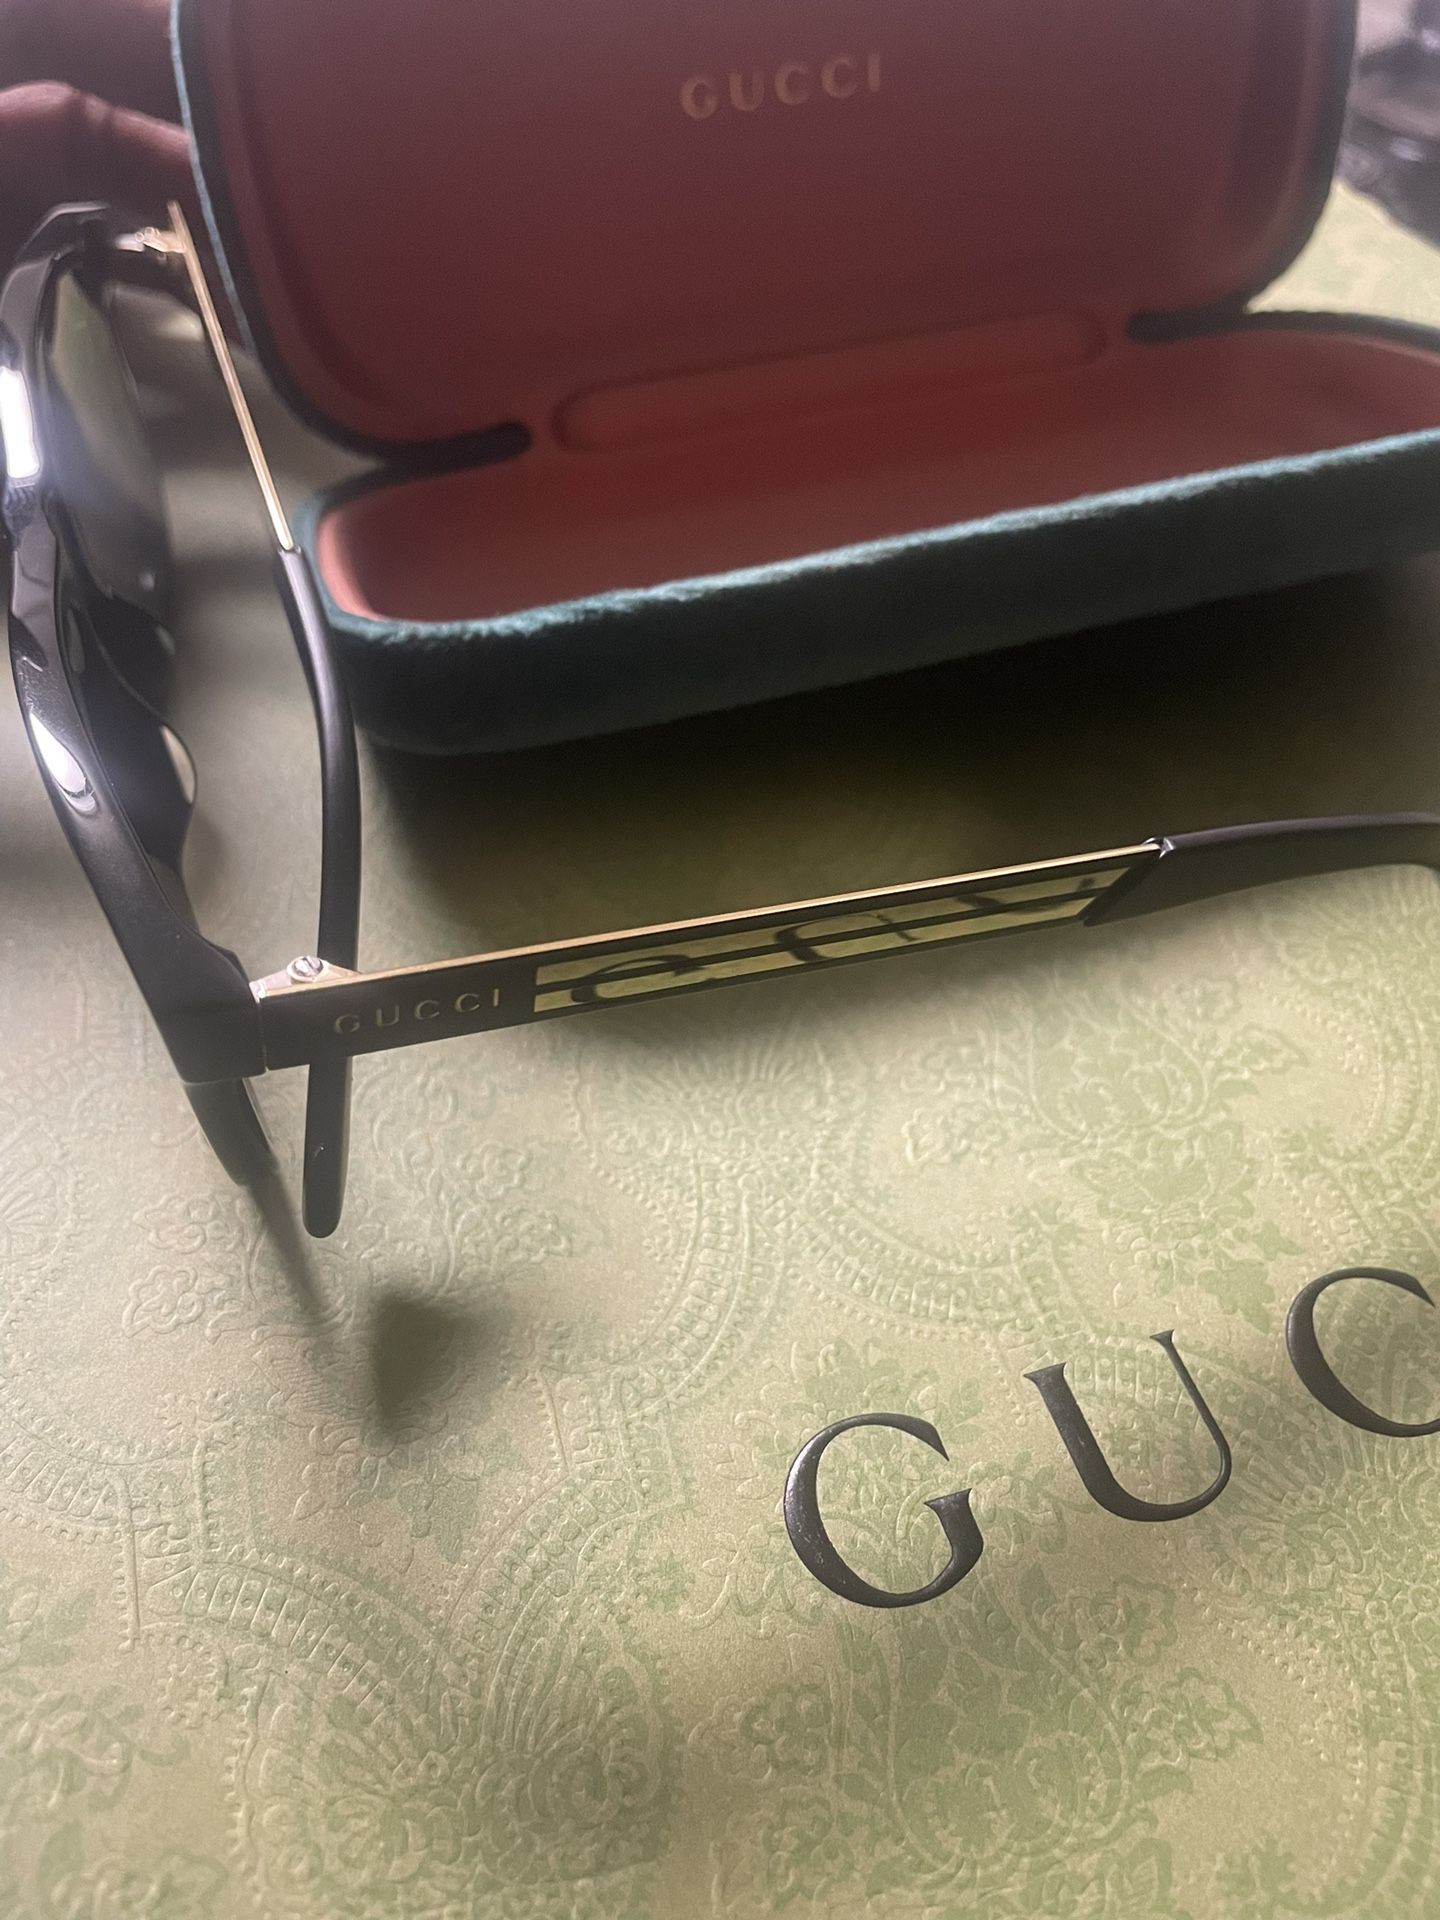 Gucci Prescription Glasses